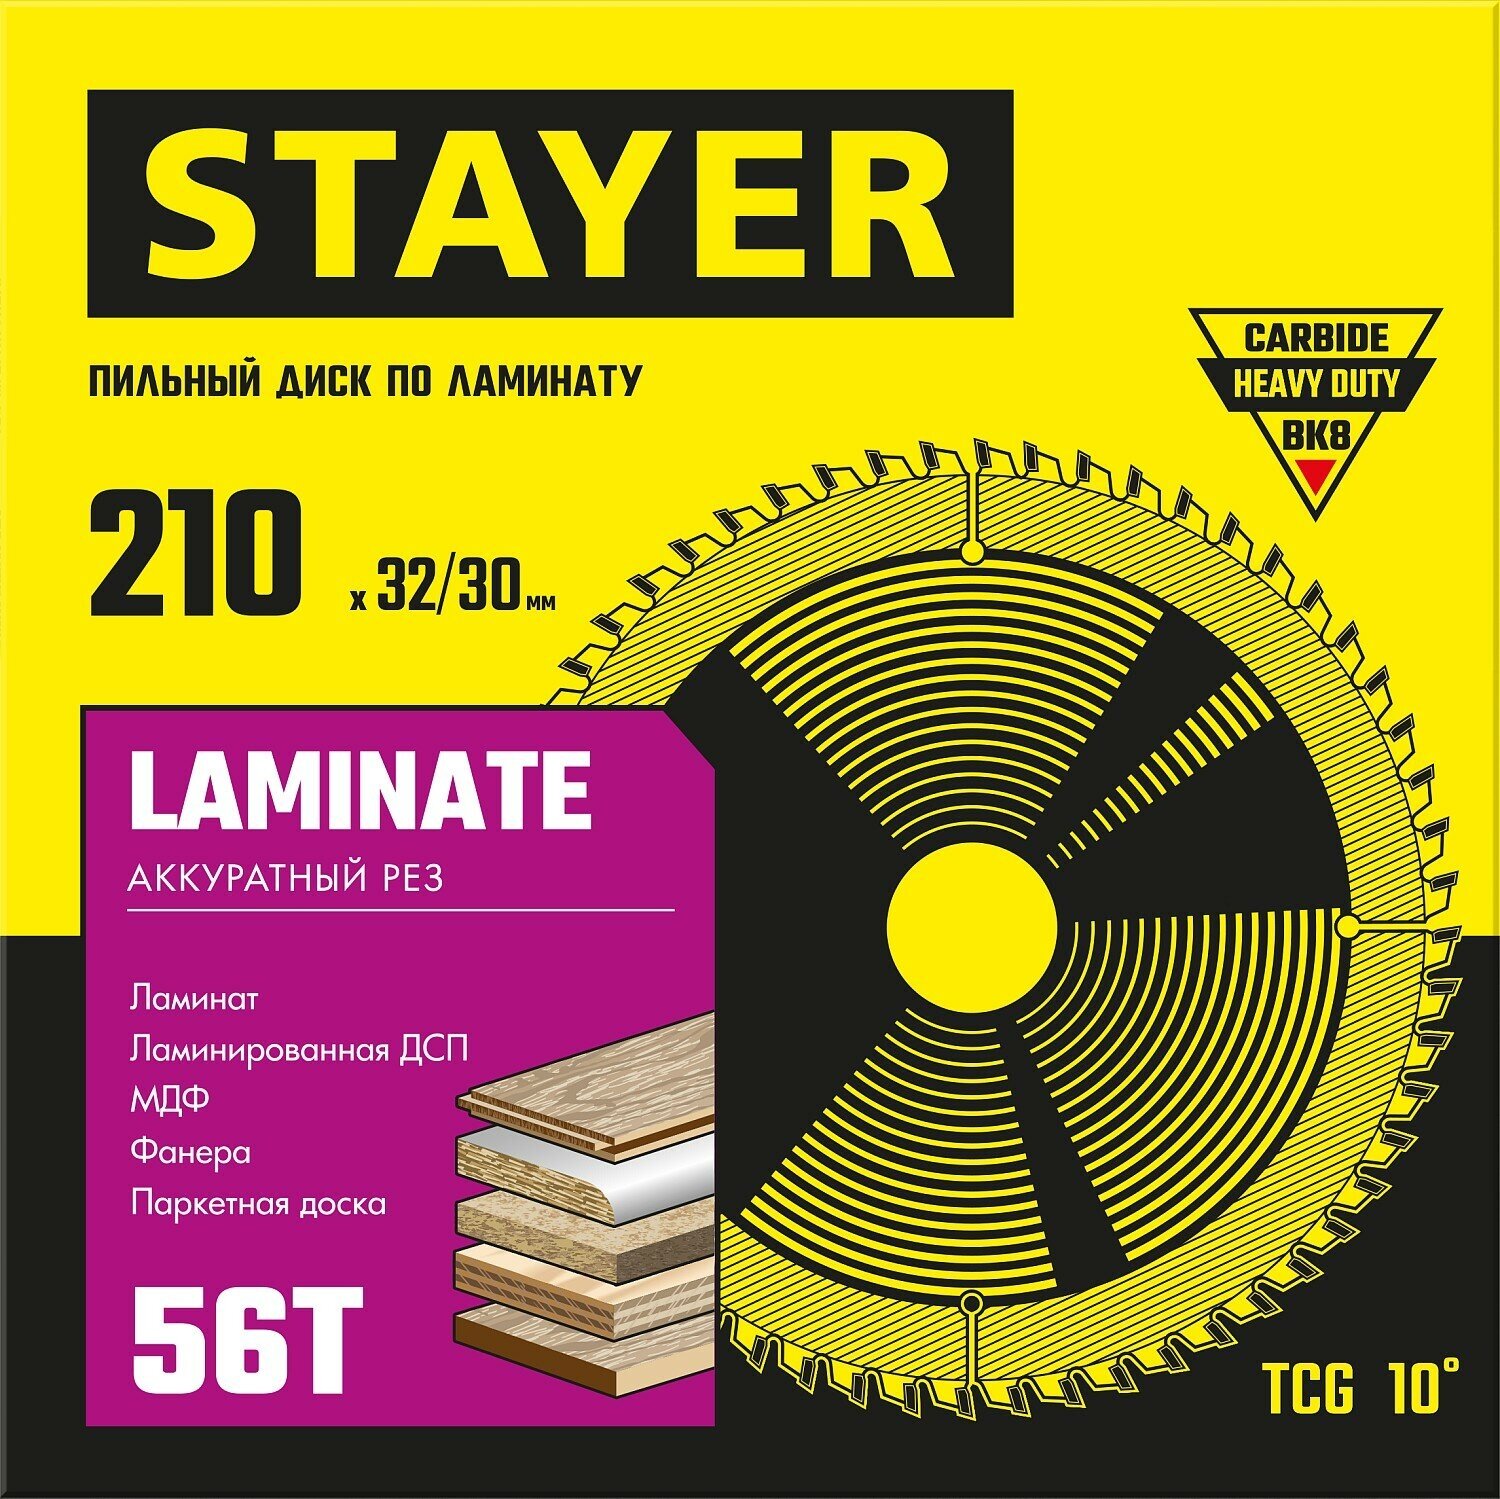 STAYER Laminate, 210 x 32/30 мм, 56Т, аккуратный рез, пильный диск по ламинату (3684-210-32-56)